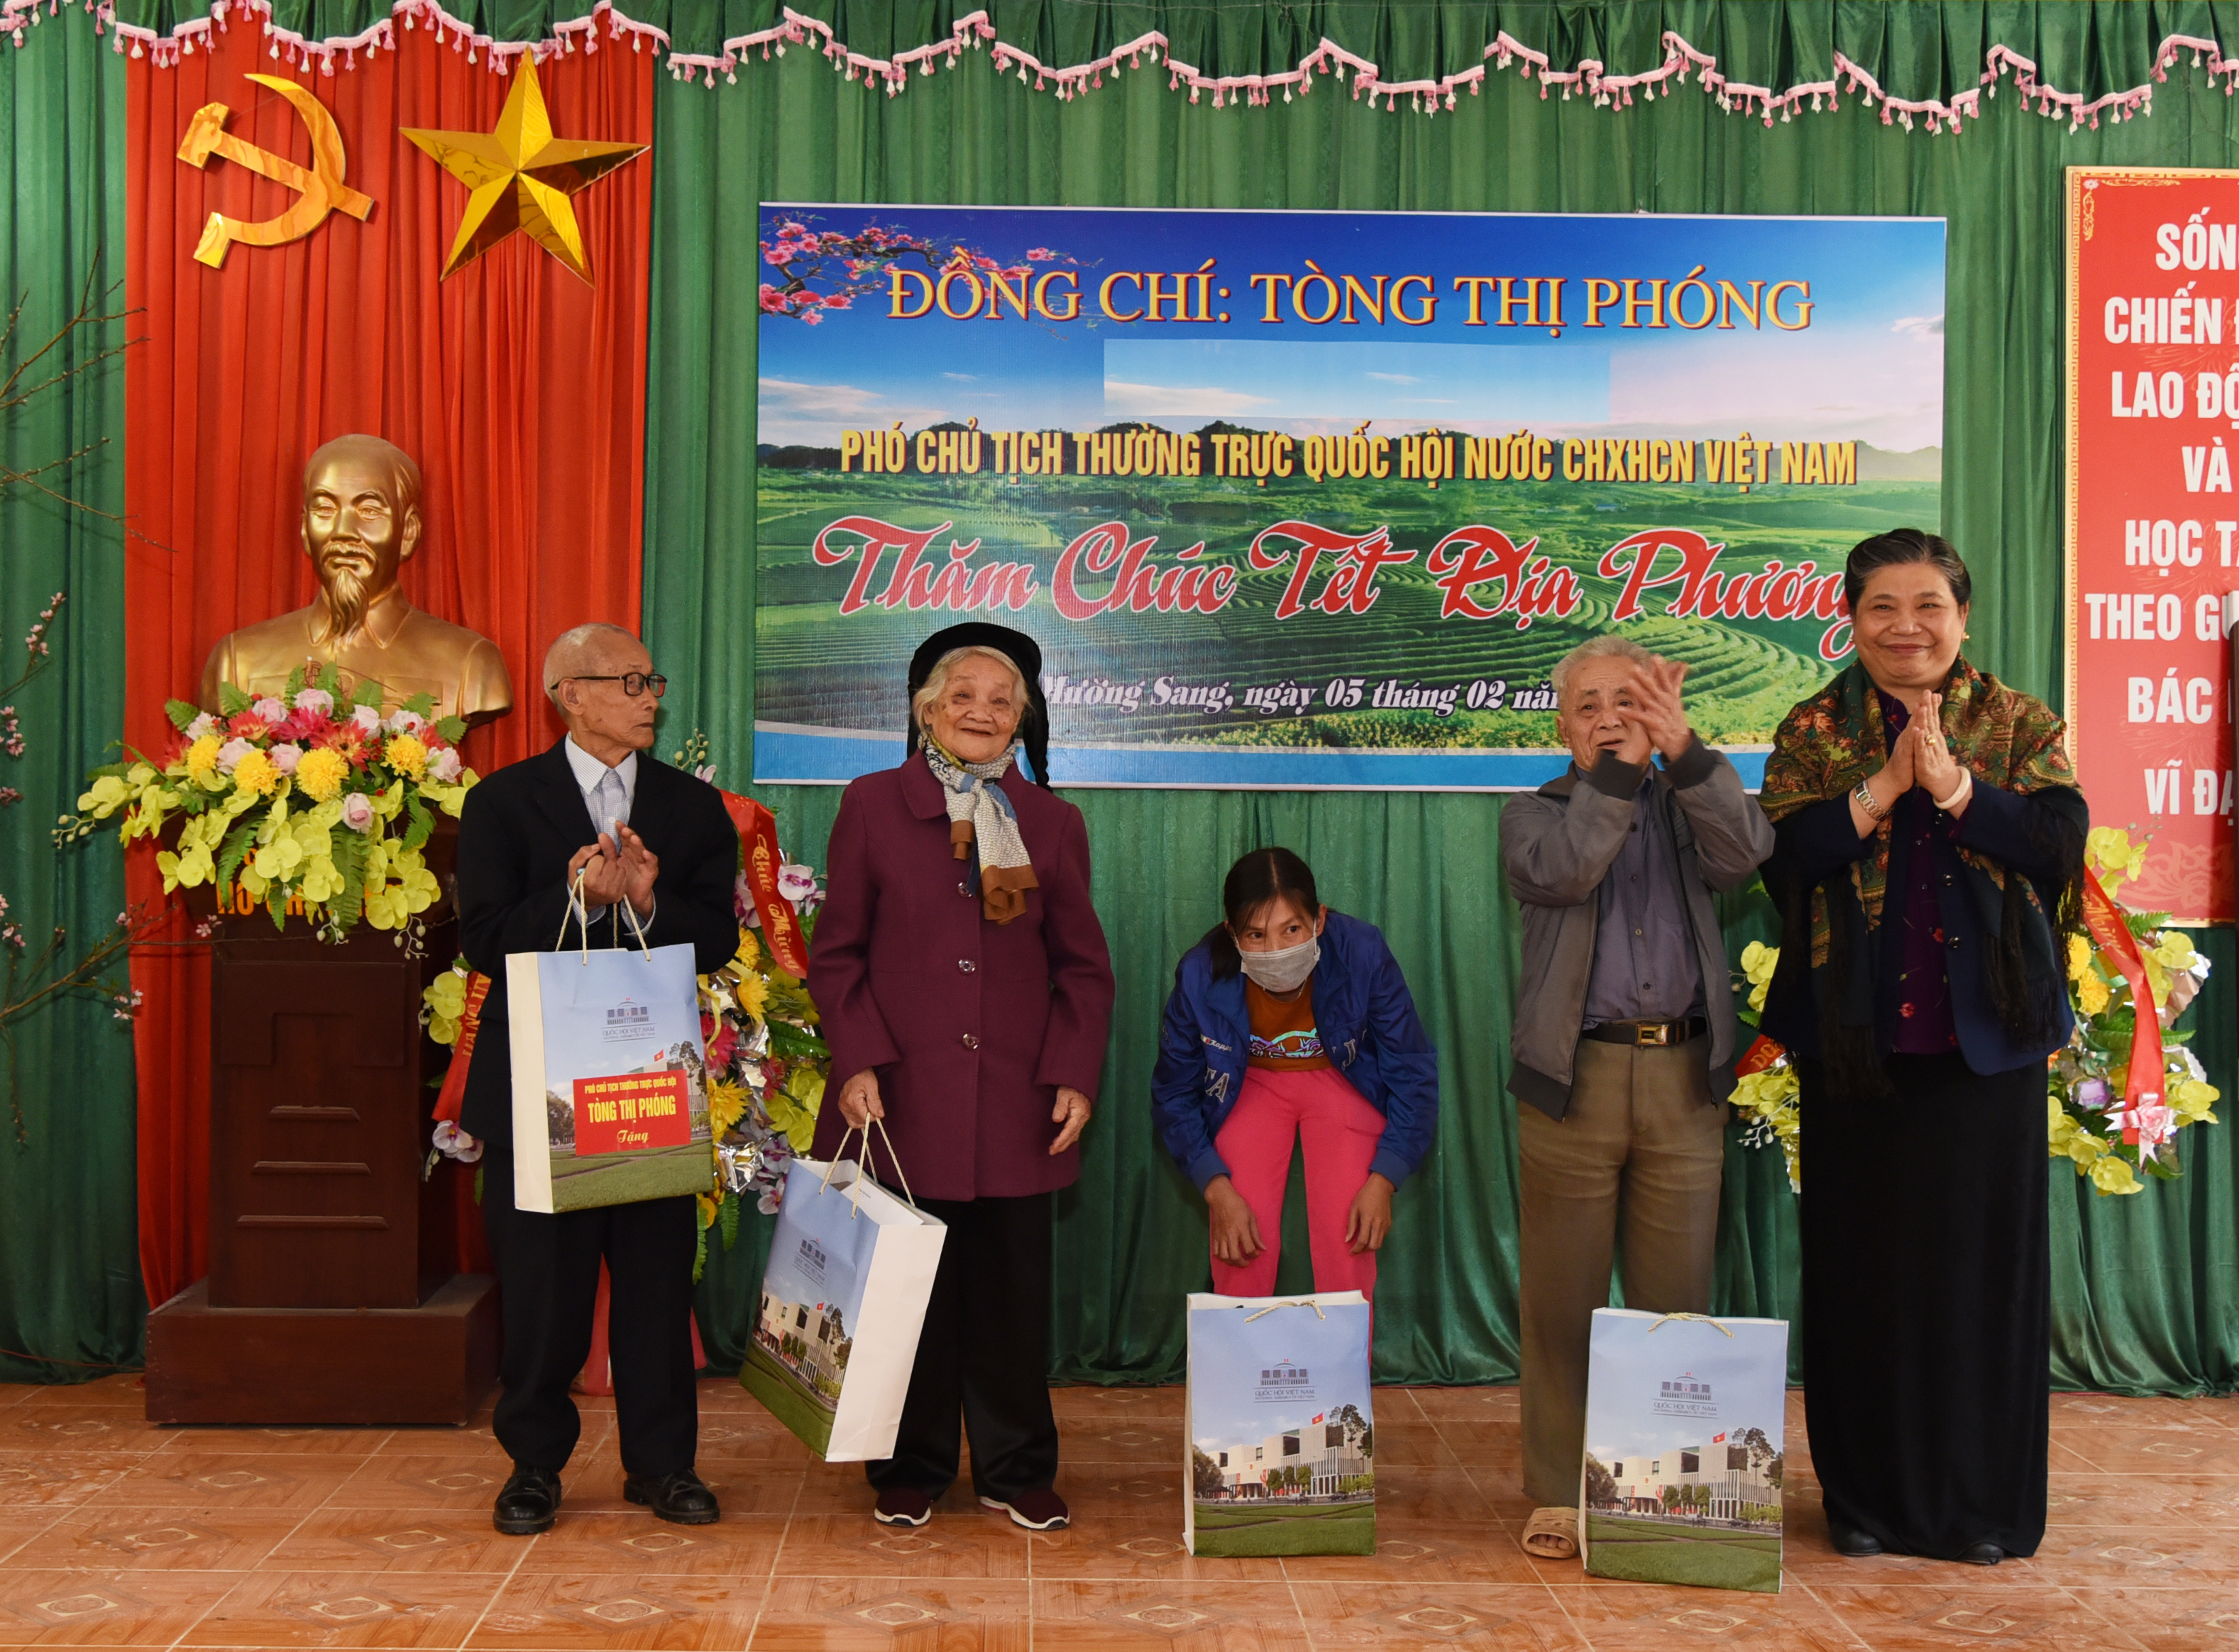 Phó Chủ tịch Thường trực Quốc hội Tòng Thị Phóng đã ân cần thăm hỏi và tặng quà một số gia đình chính sách, gia đình nghèo ở xã Mường Sang, Mộc Châu, Sơn LaDSC_2225